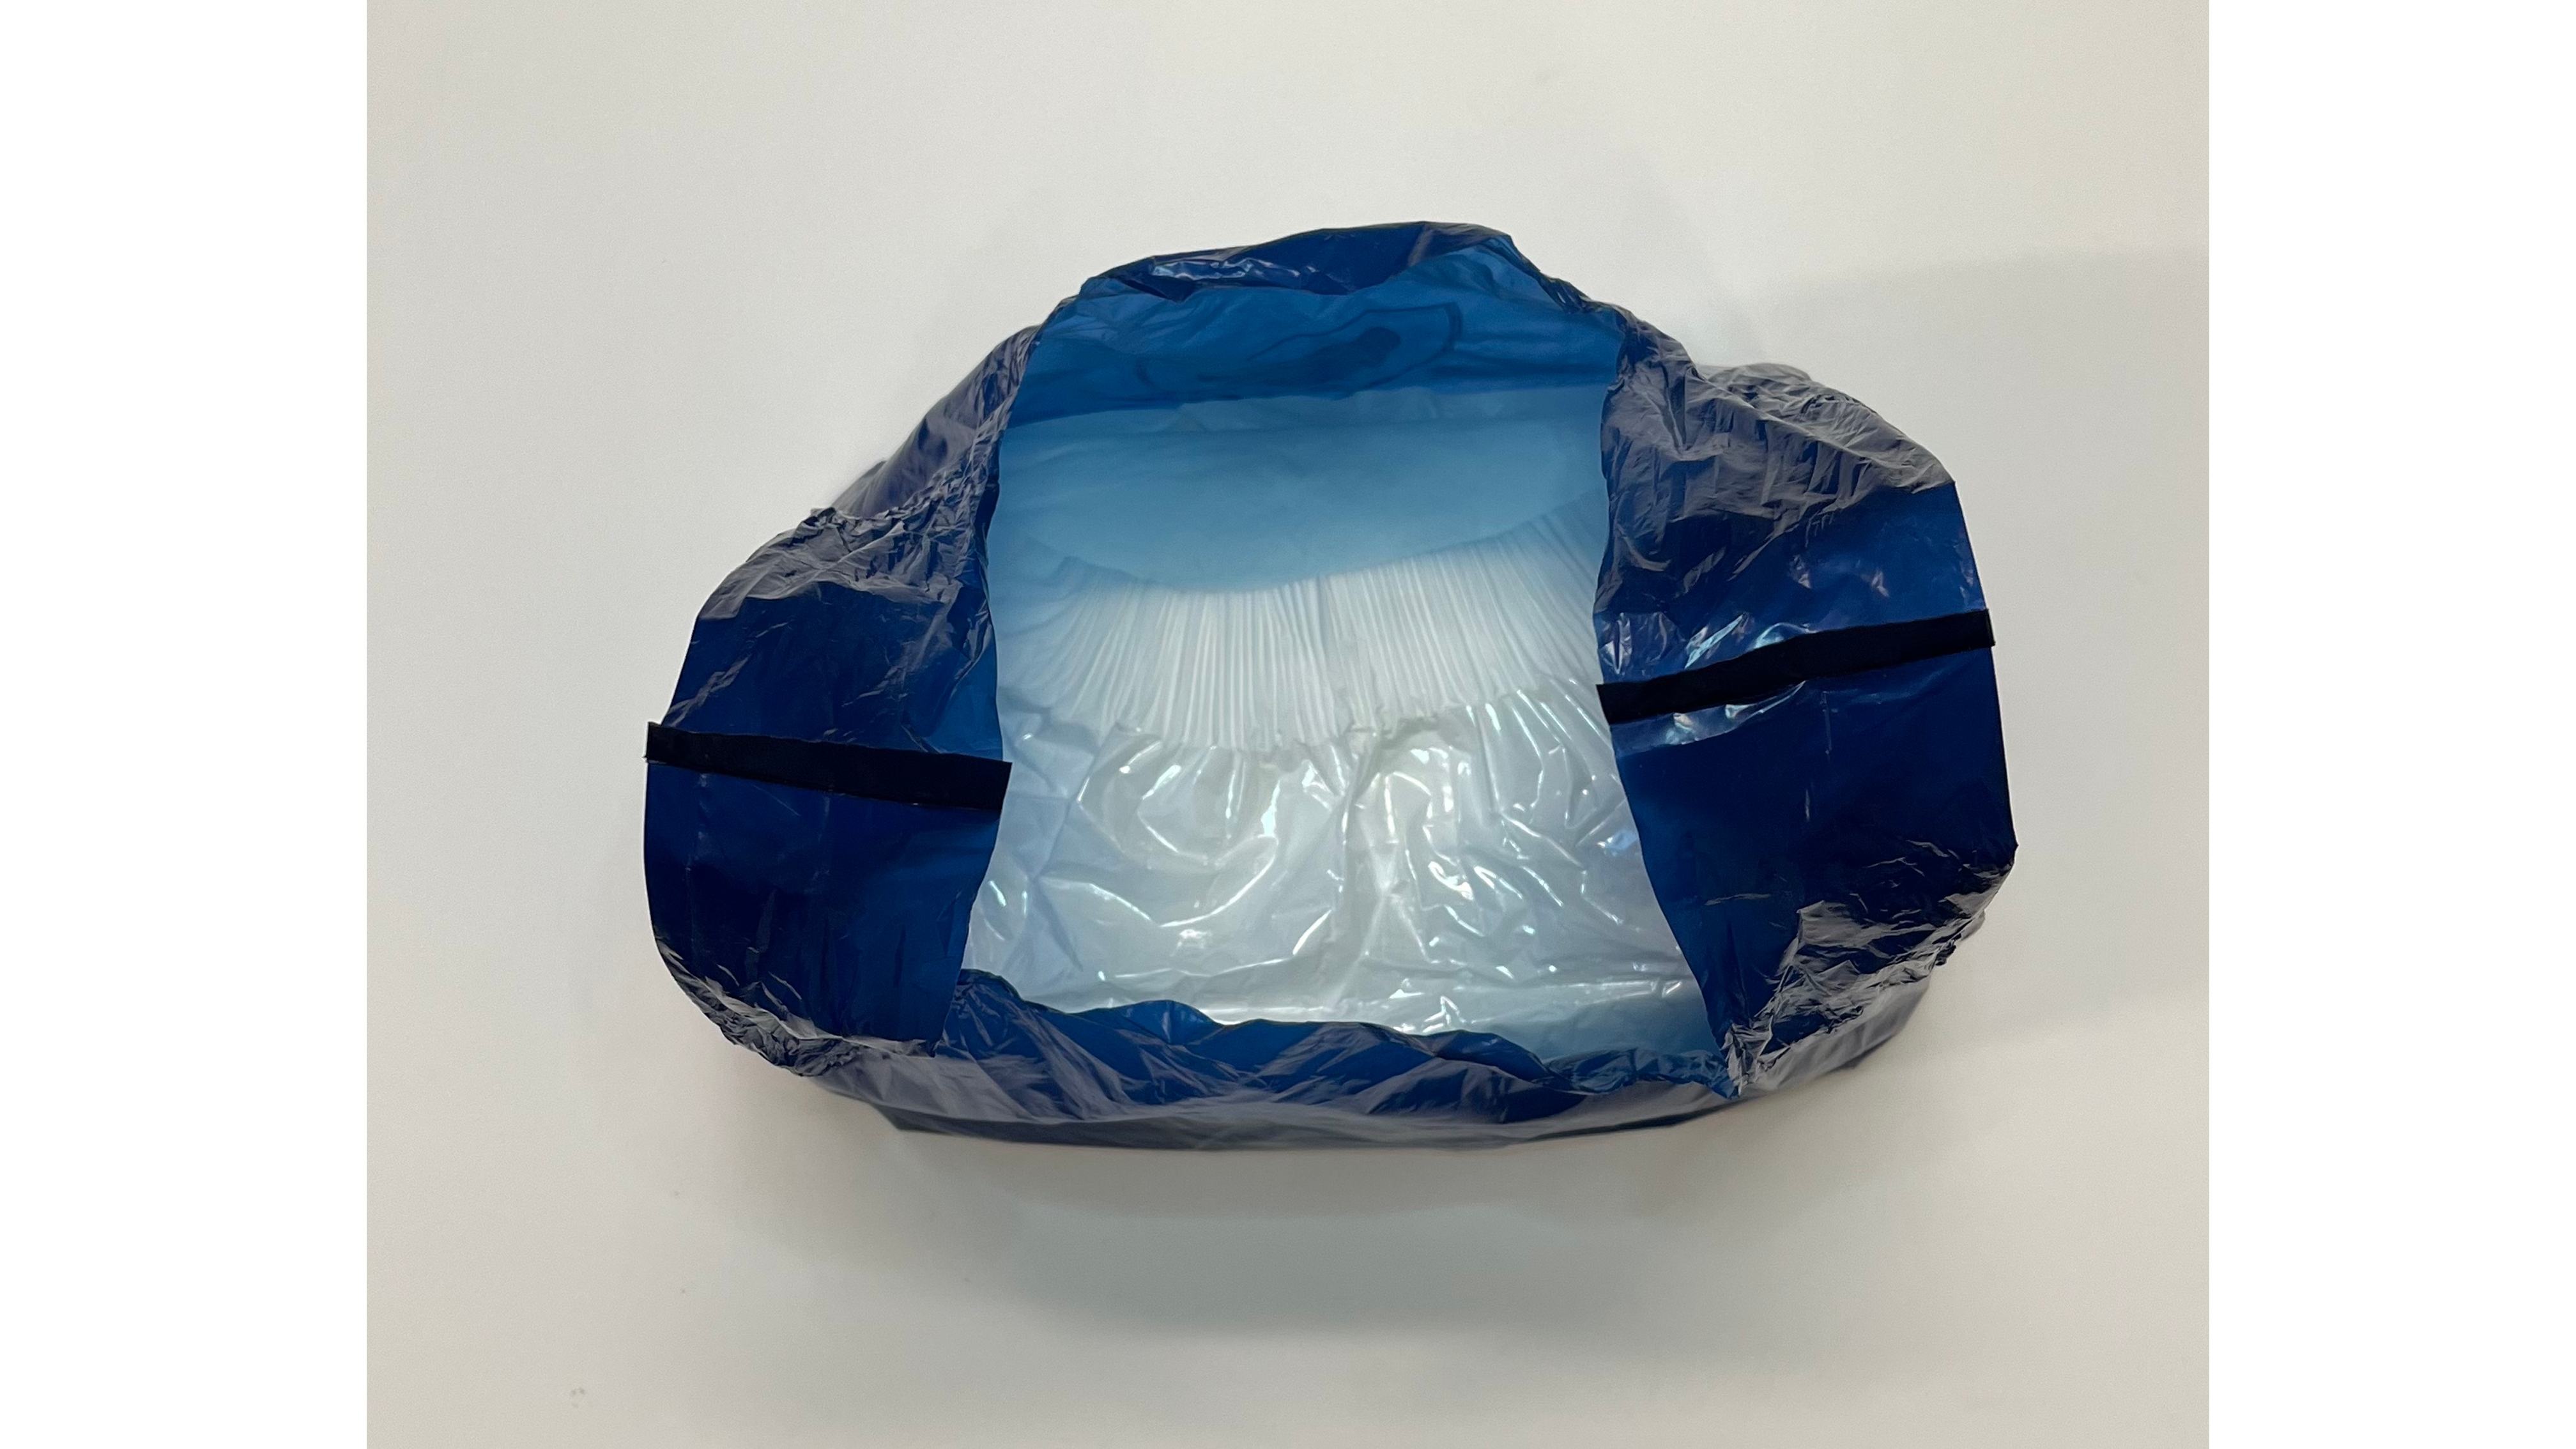 Opening of DiscreetShield adult diaper disposal bag